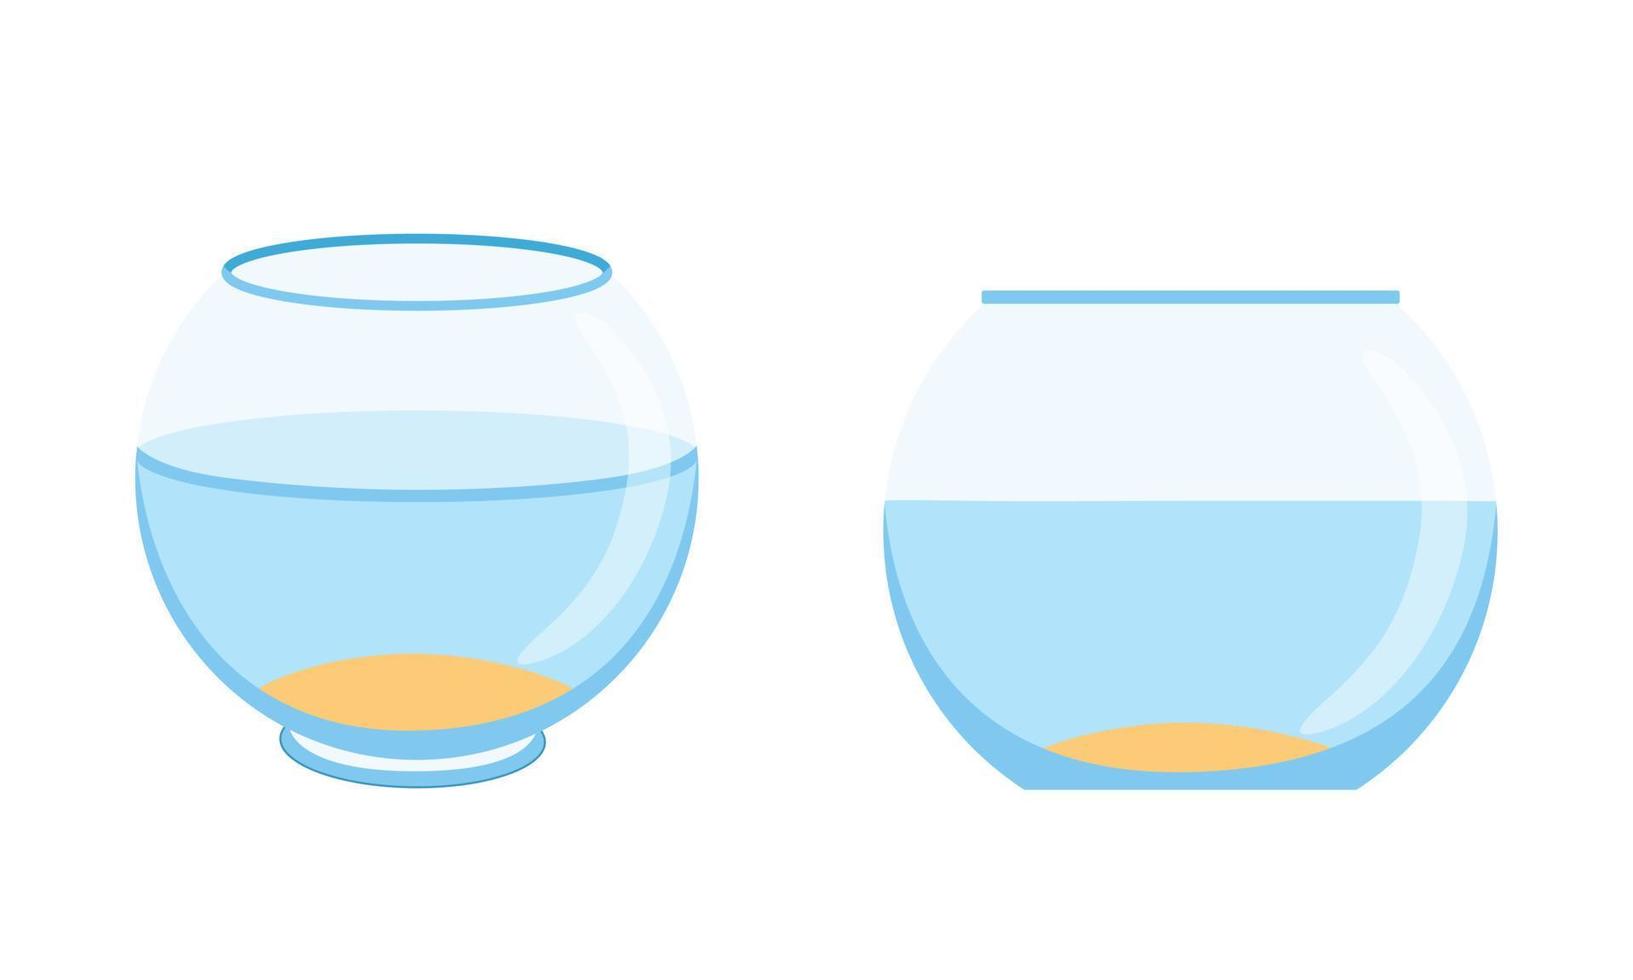 Fishbowl-Aquarium auf weißem Hintergrund. leeres Goldfischglas mit Wasser. Vektor-Illustration. Satz von zwei Aquarien vektor